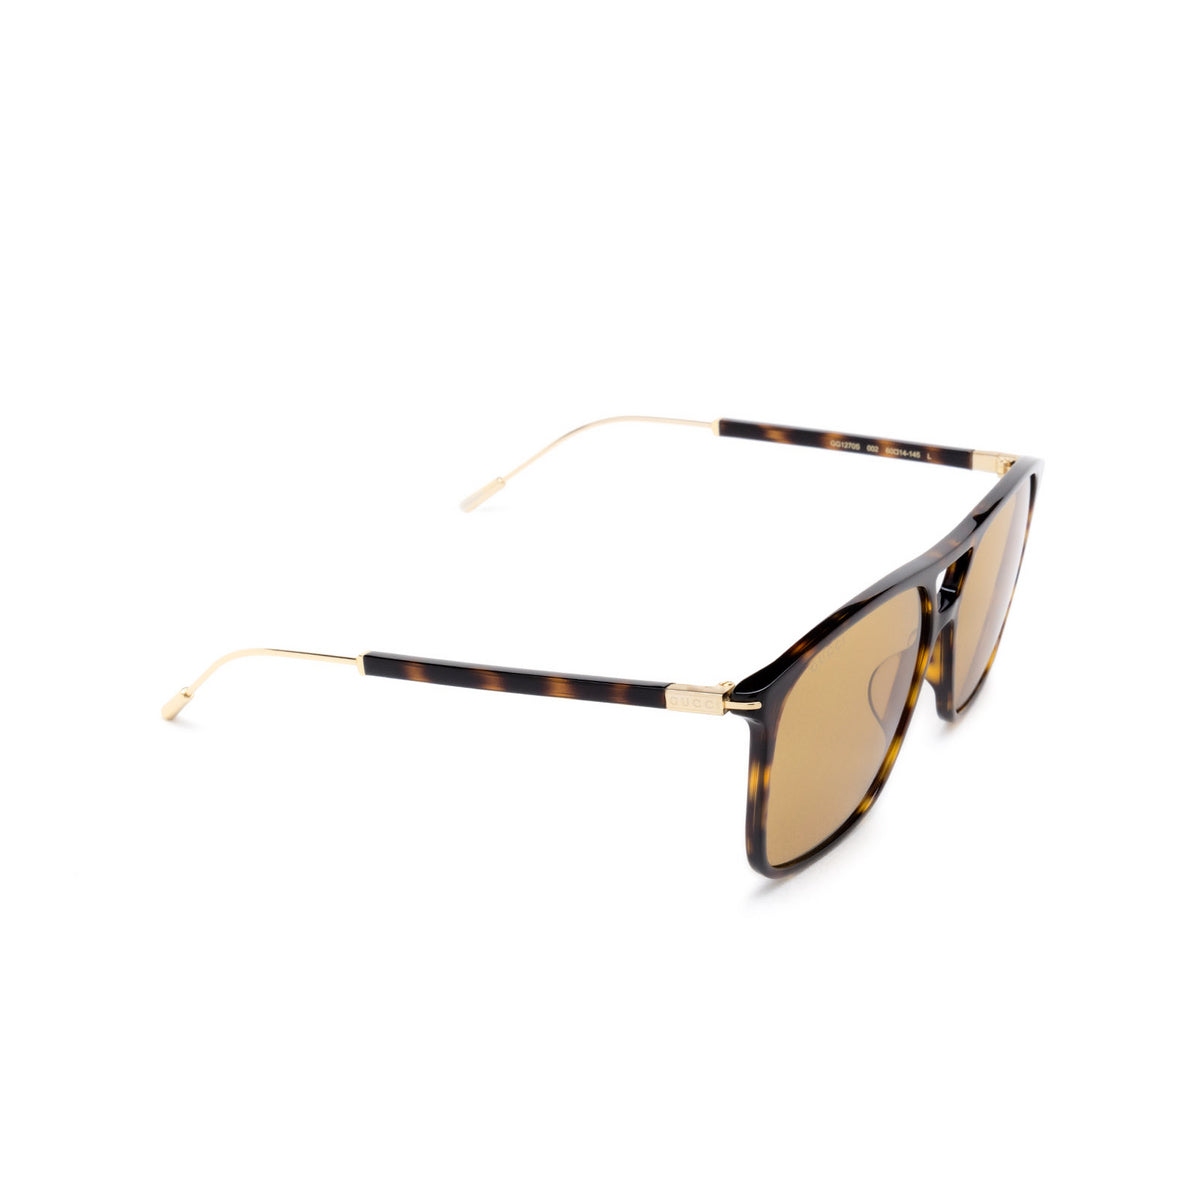 Gucci GG1270S-002 60mm New Sunglasses